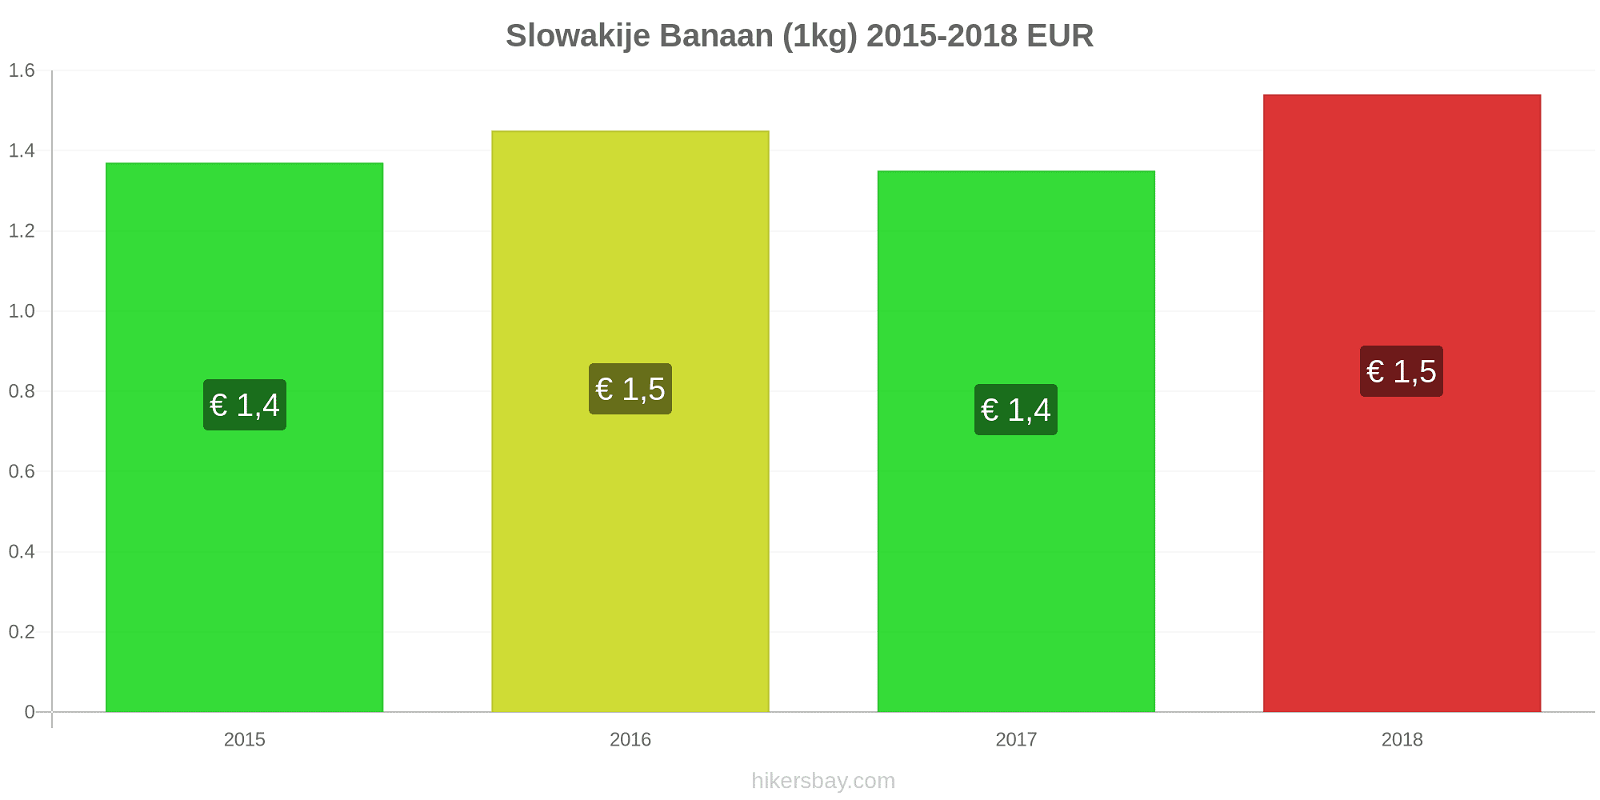 Slowakije prijswijzigingen Bananen (1kg) hikersbay.com